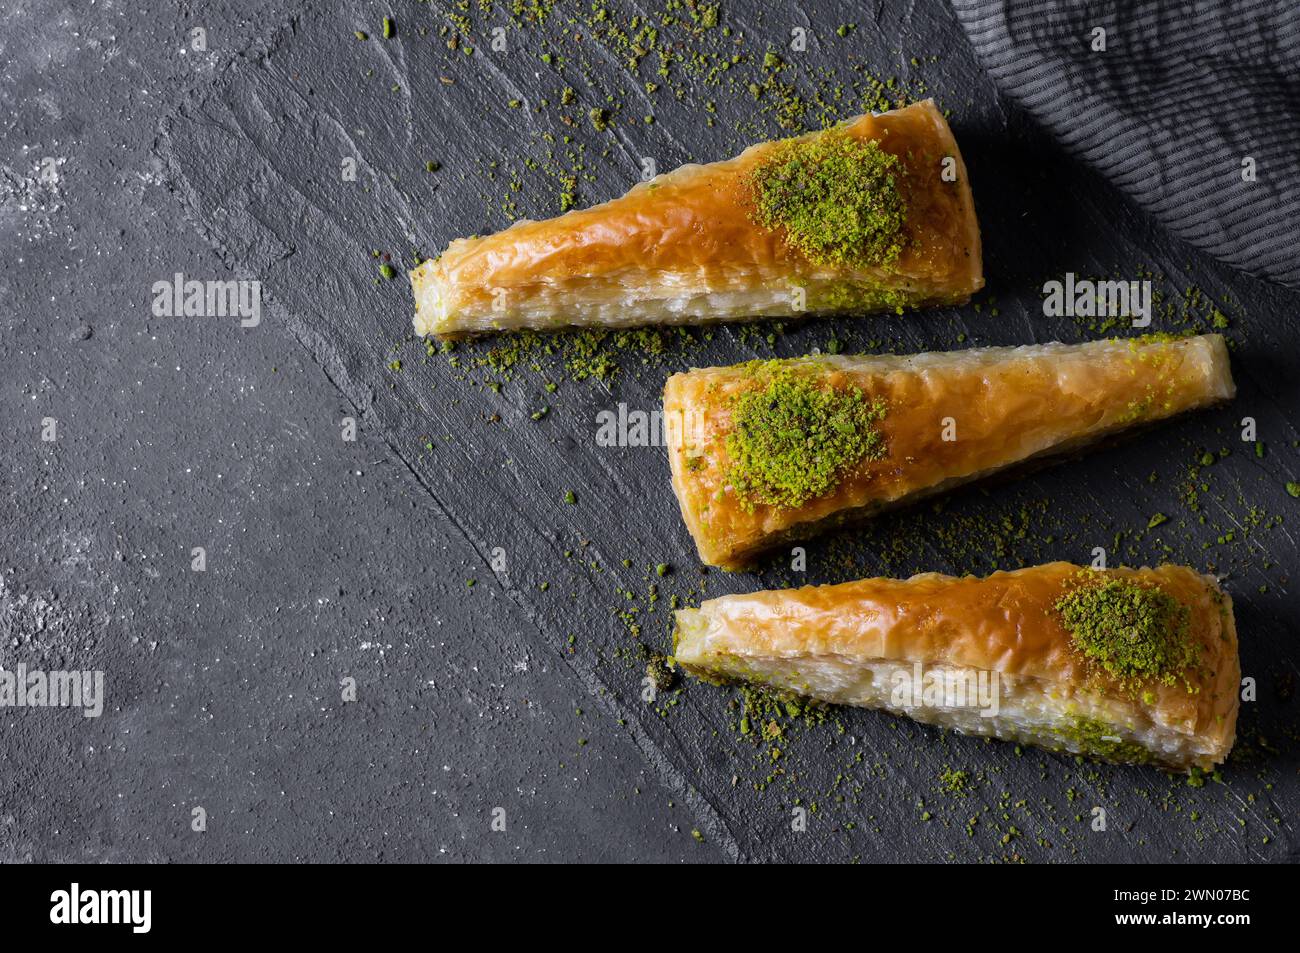 Dessert turc traditionnel tranche de carrotte antep baklava avec pistache sur fond rustique. Concept desserts Banque D'Images